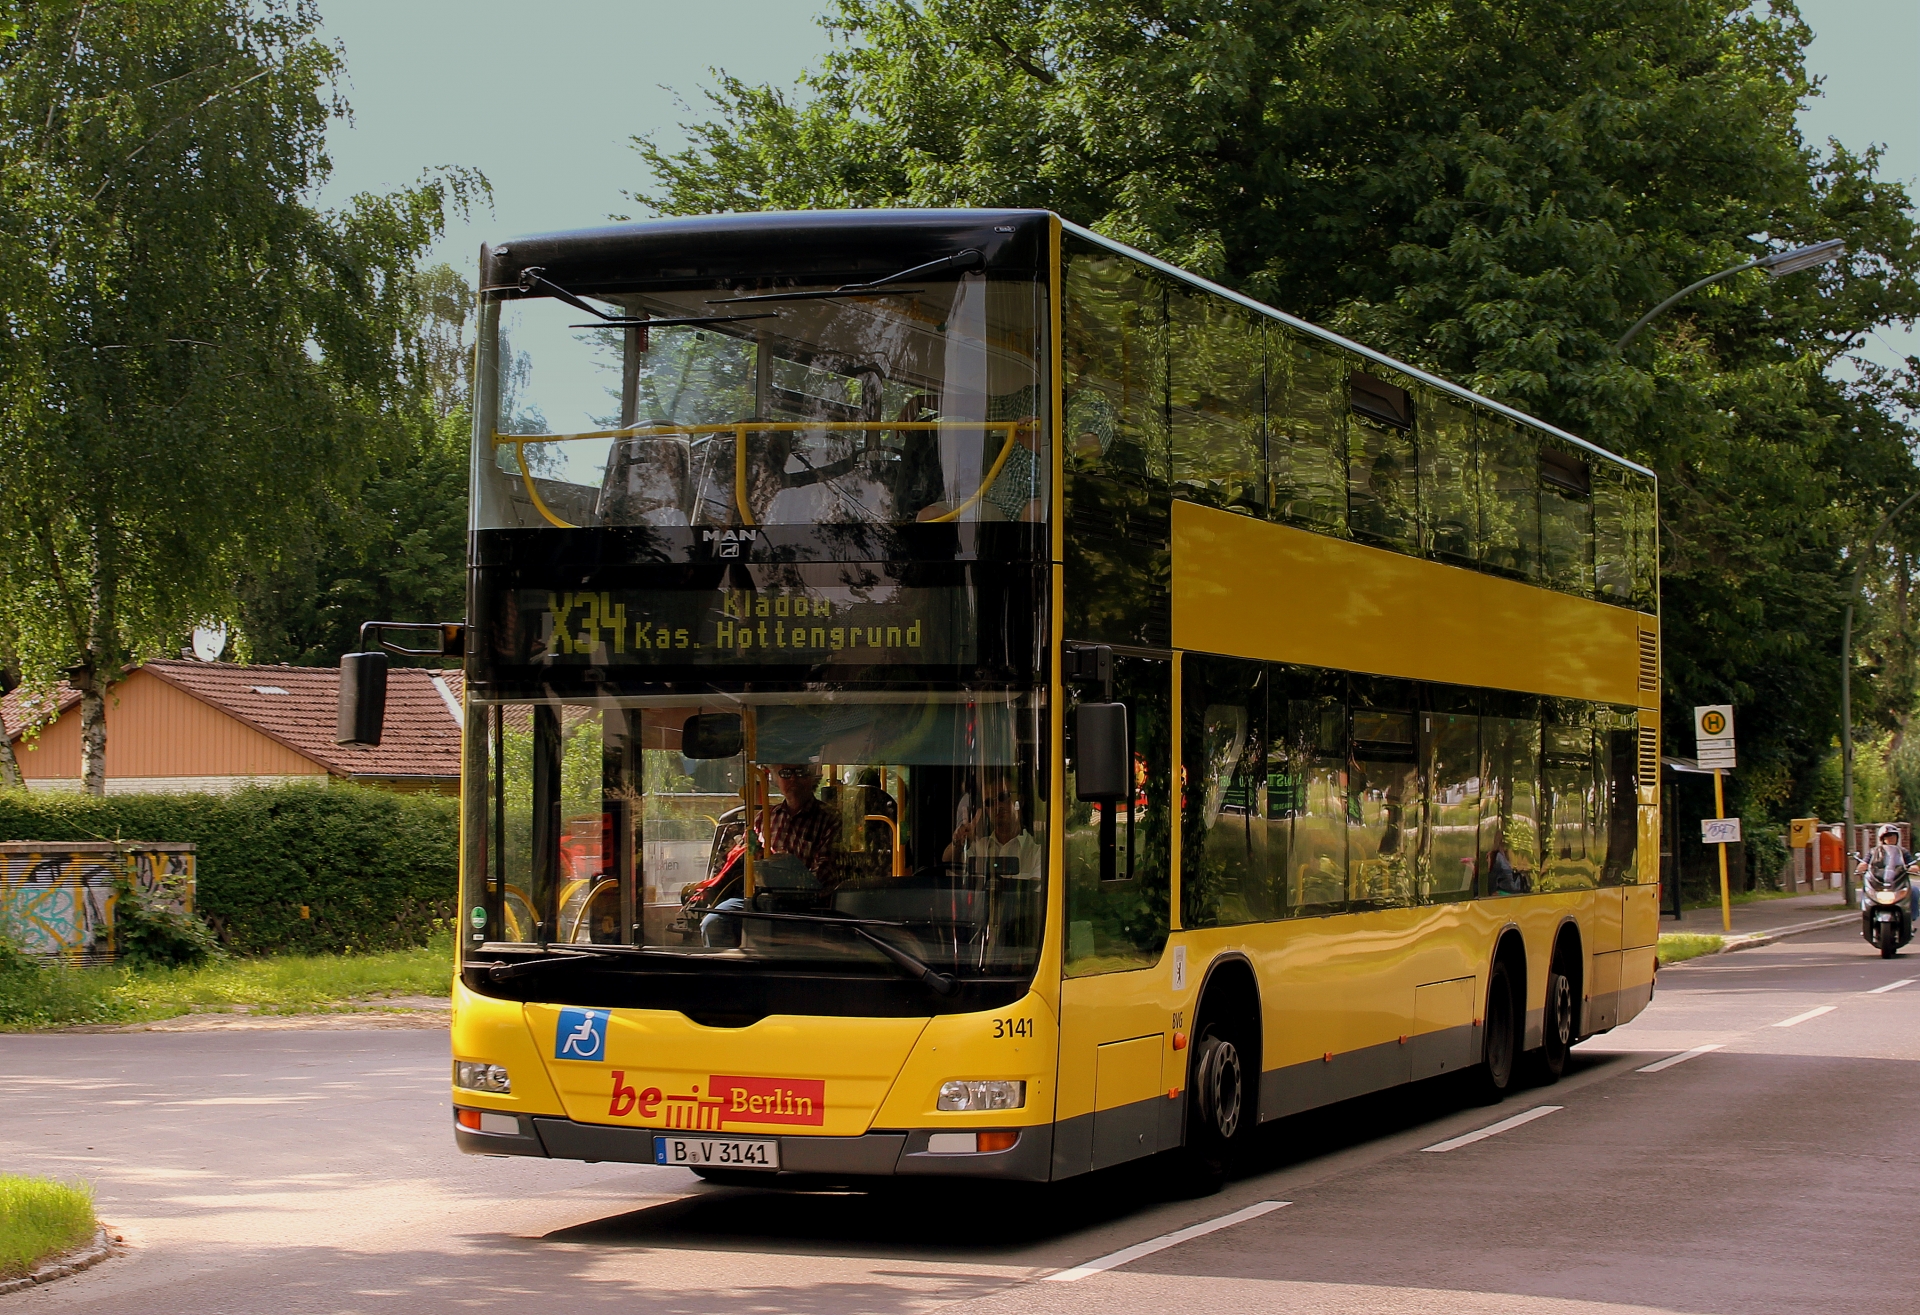 Người Đức ưu tiên các loại phương tiện công cộng hơn như xe bus, tàu điện, tàu hoả, đặc biệt là xe đạp.